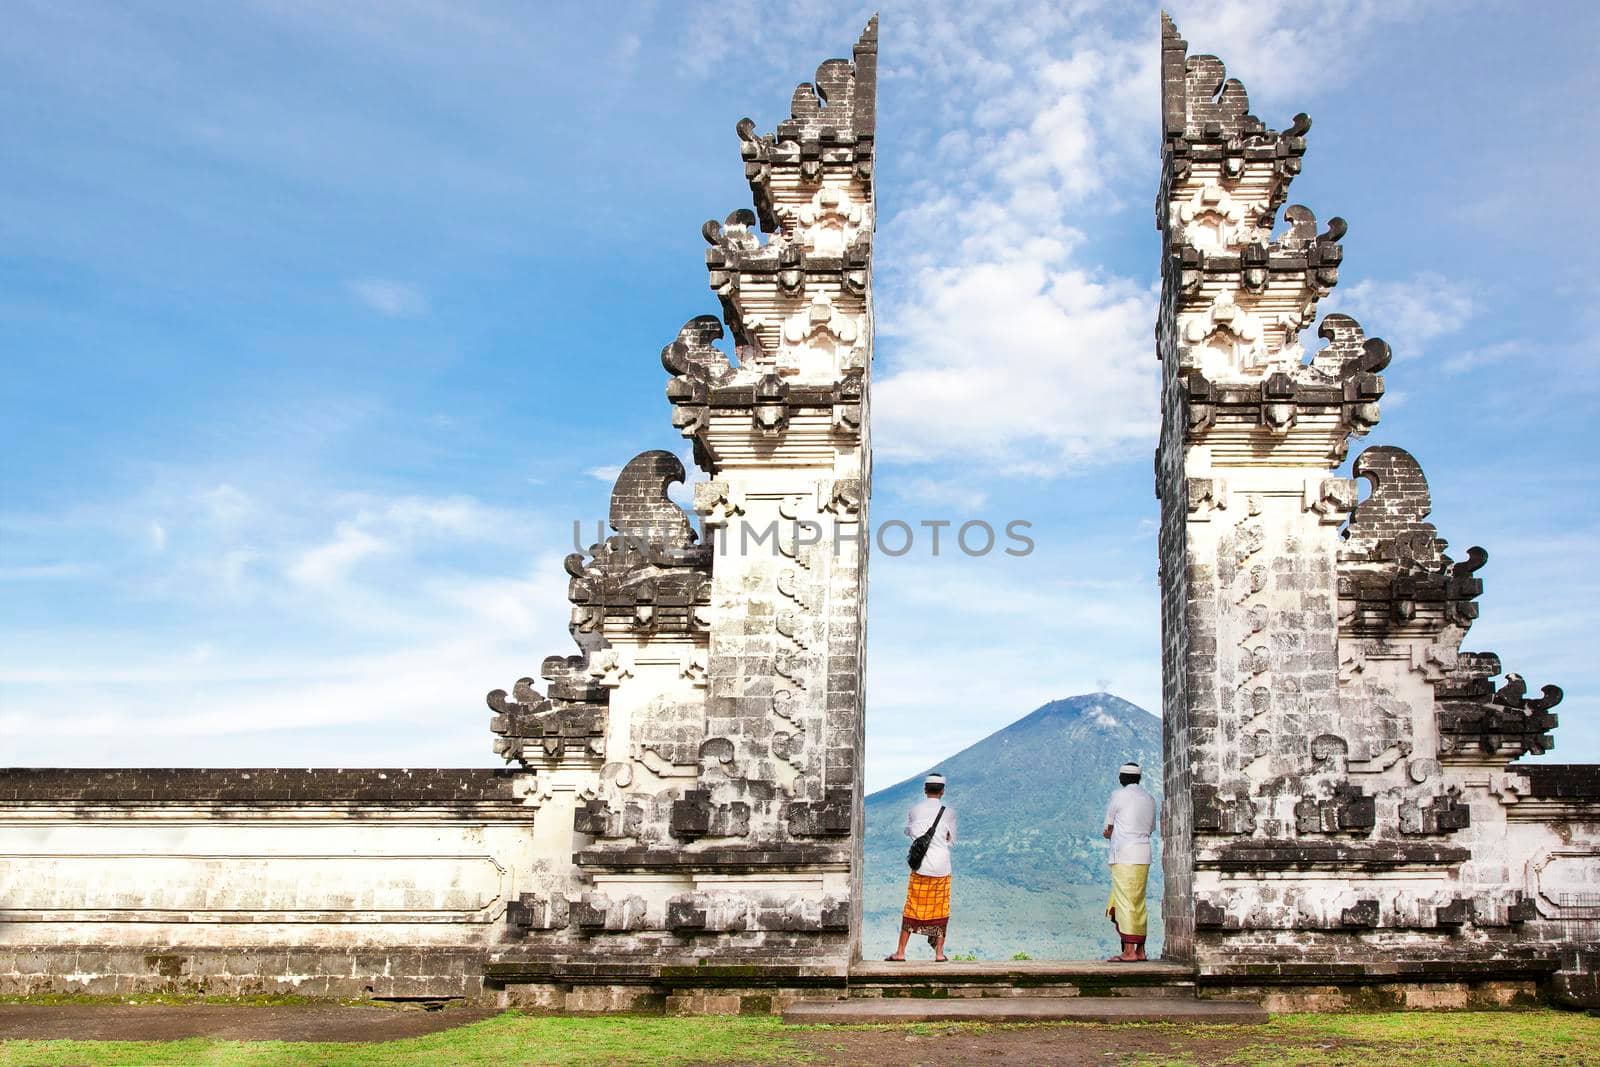 balinese people standing betwen Lempuyang gate. Bali